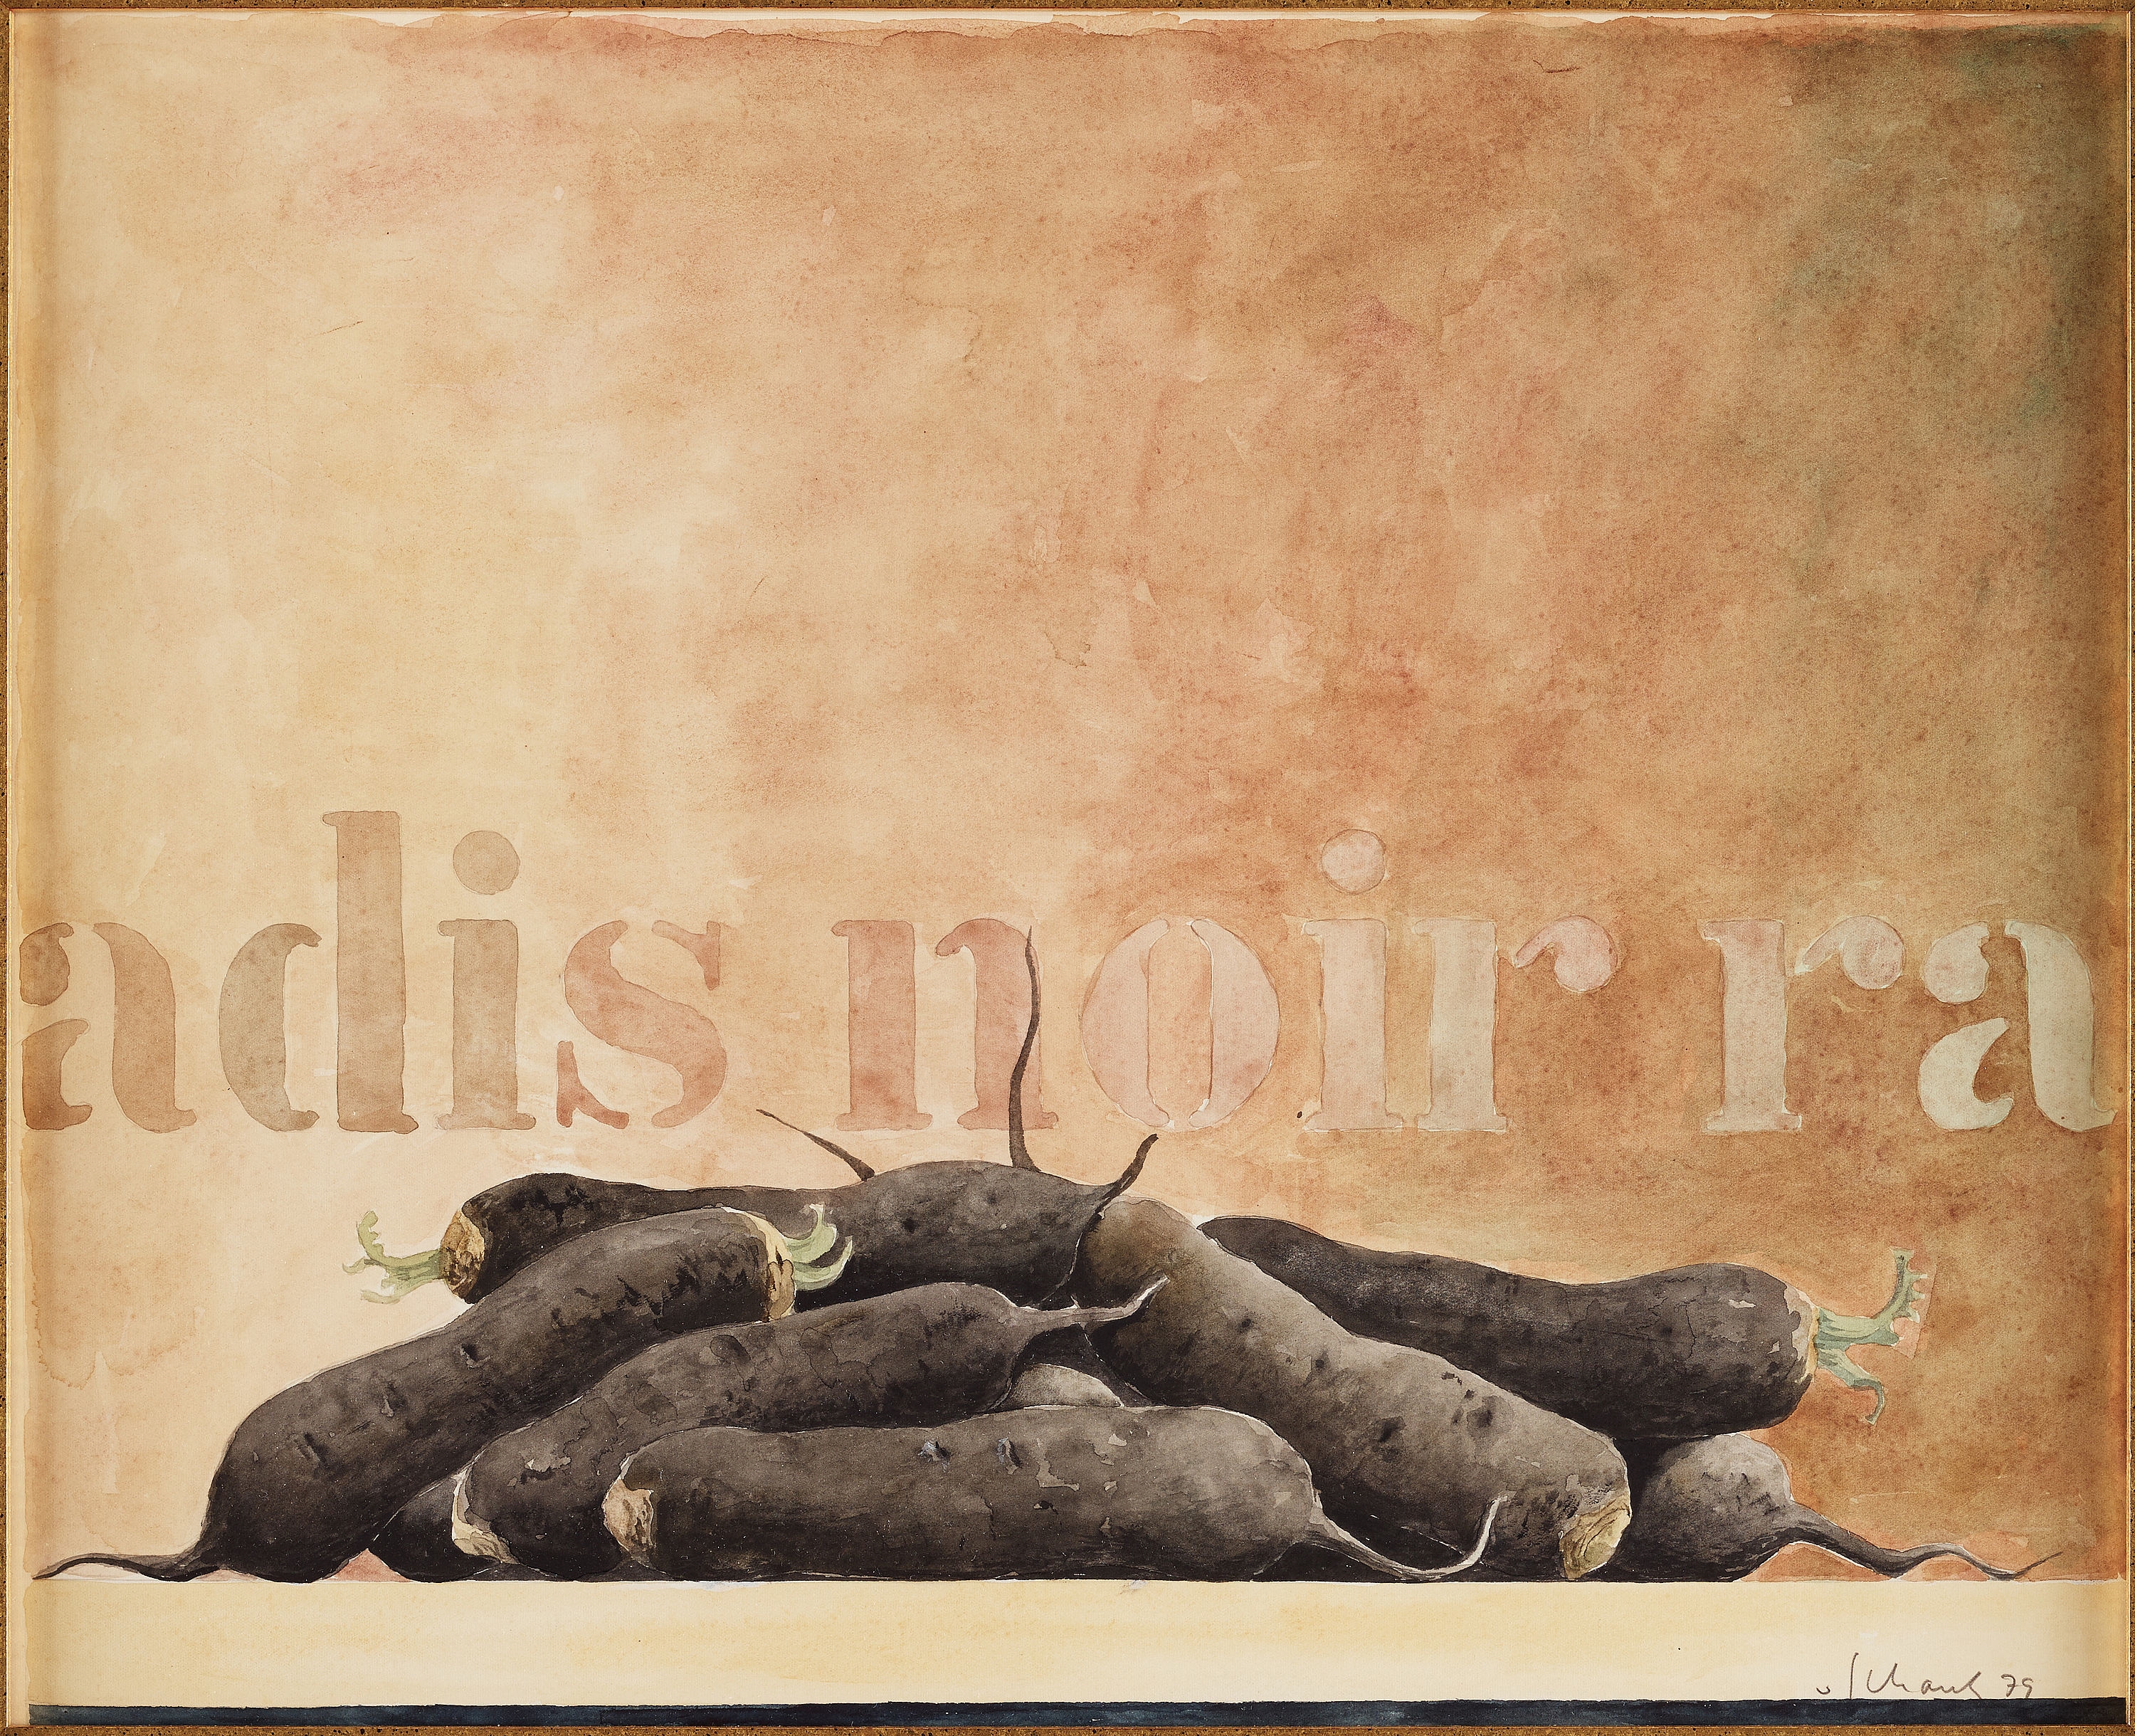 Radis Noir by Philip von Schantz, 1979